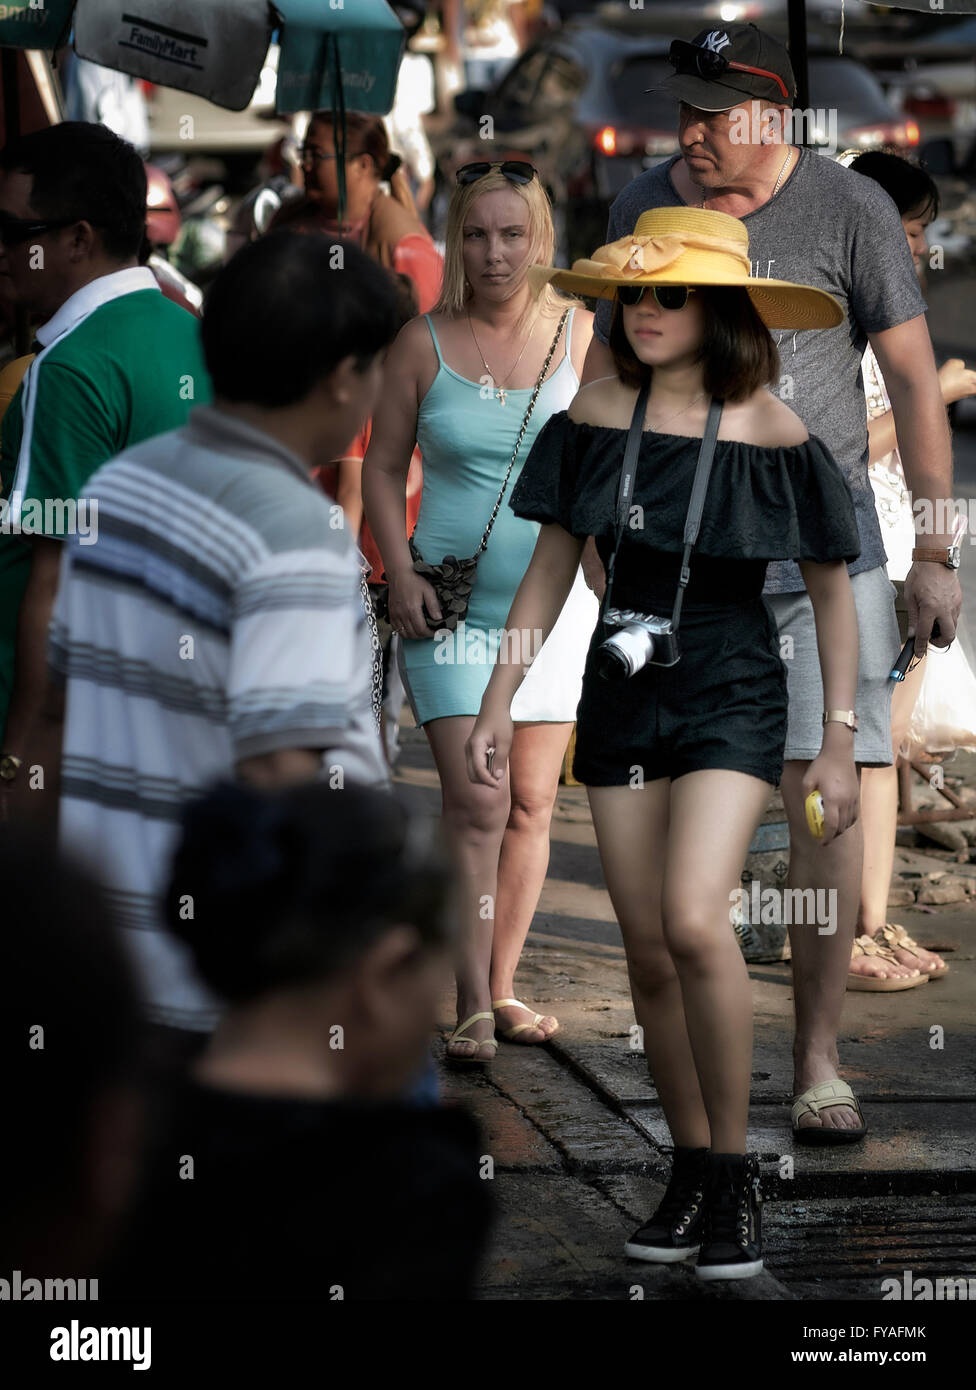 Gekleidet asiatische Teenager-Mädchen, die in einer Menge. Thailand S. E. Asien Stockfoto